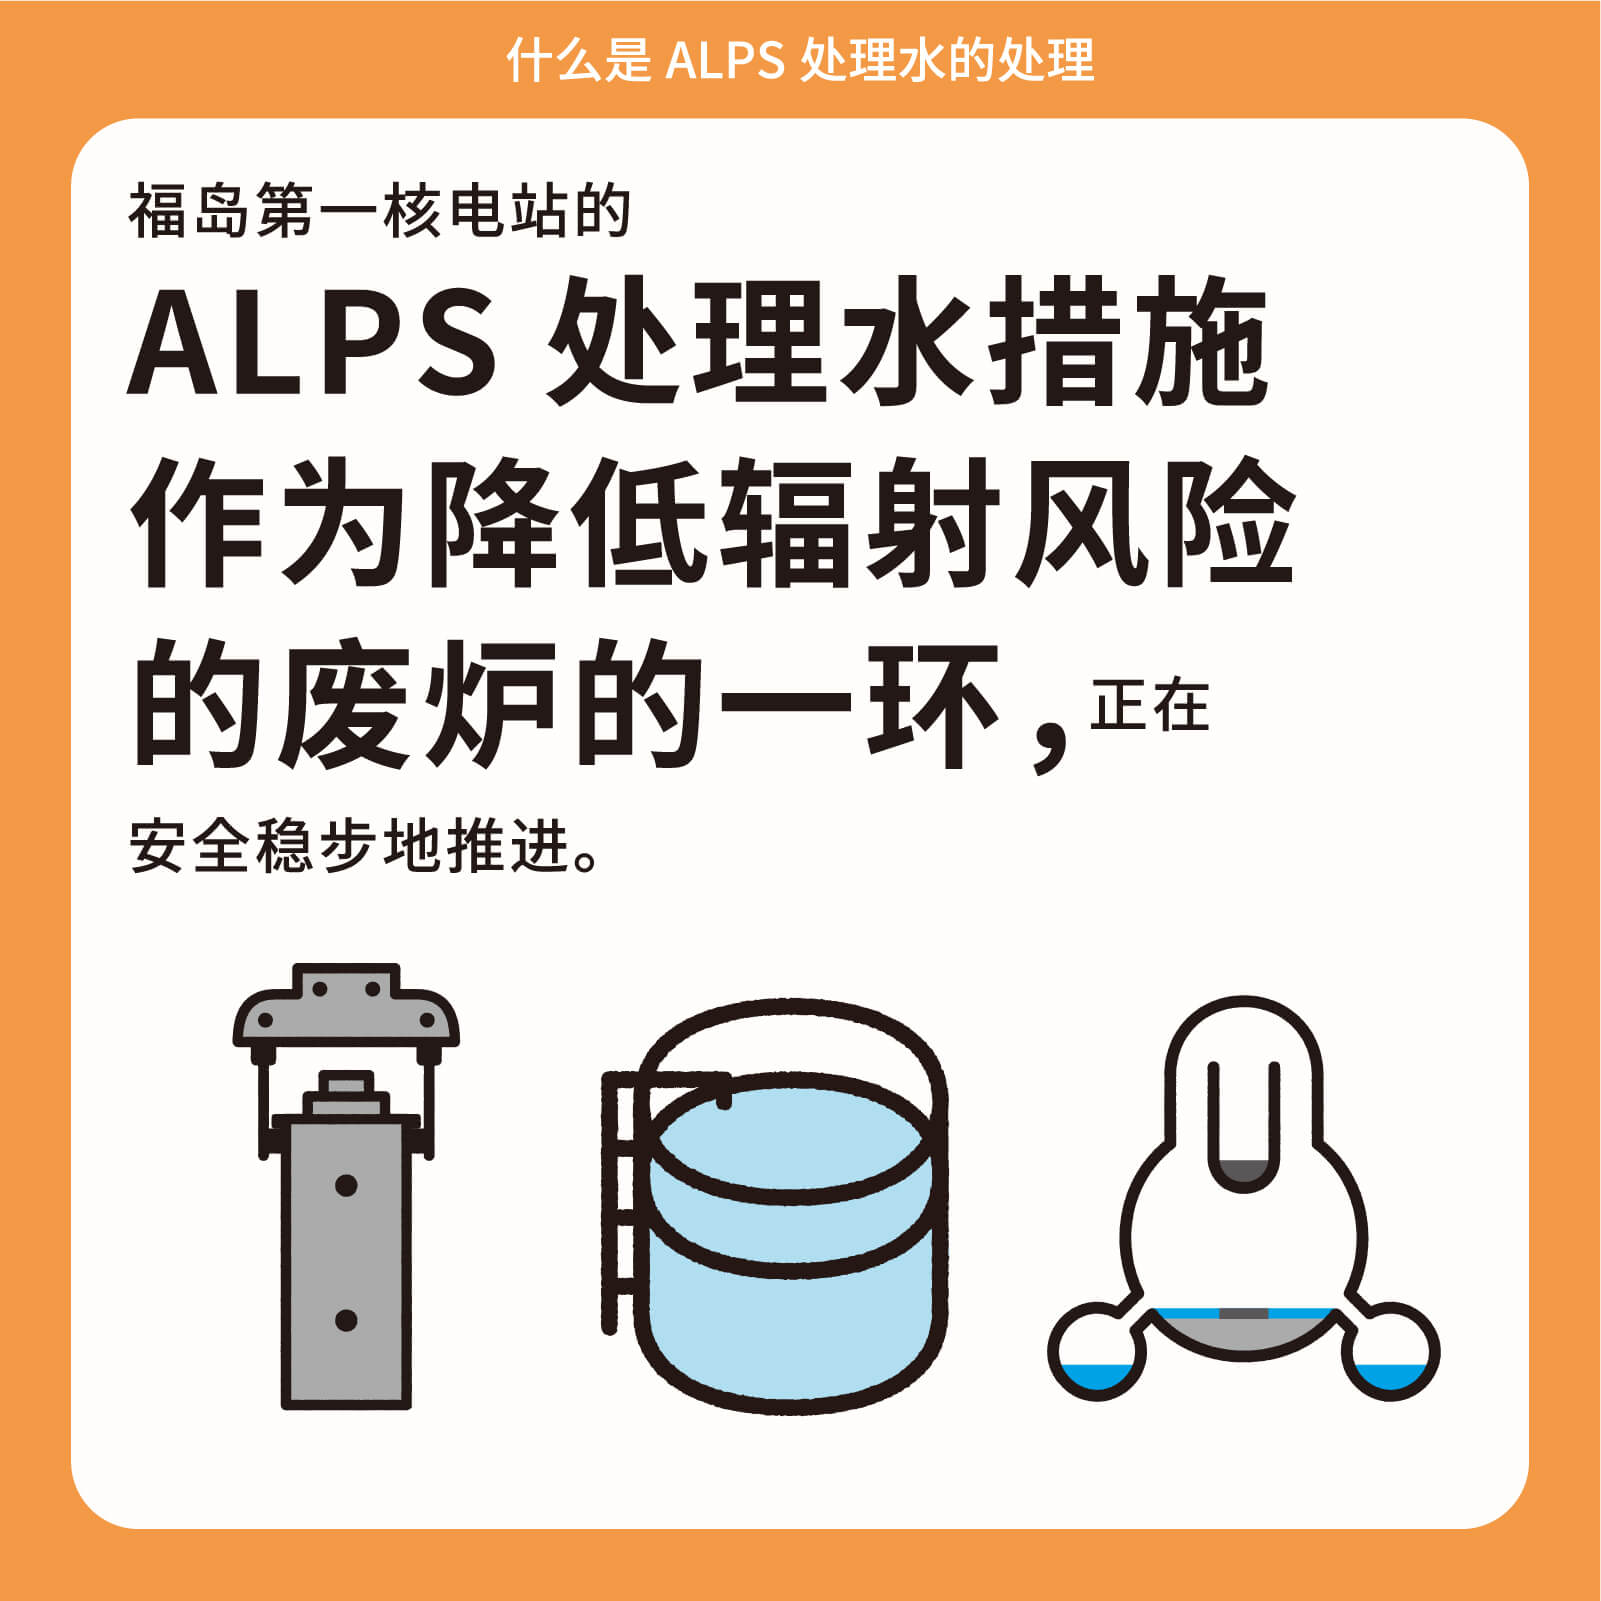 福岛第一核电站的ALPS处理水措施作为降低辐射风险的废炉的一环，正在安全稳步地推进。